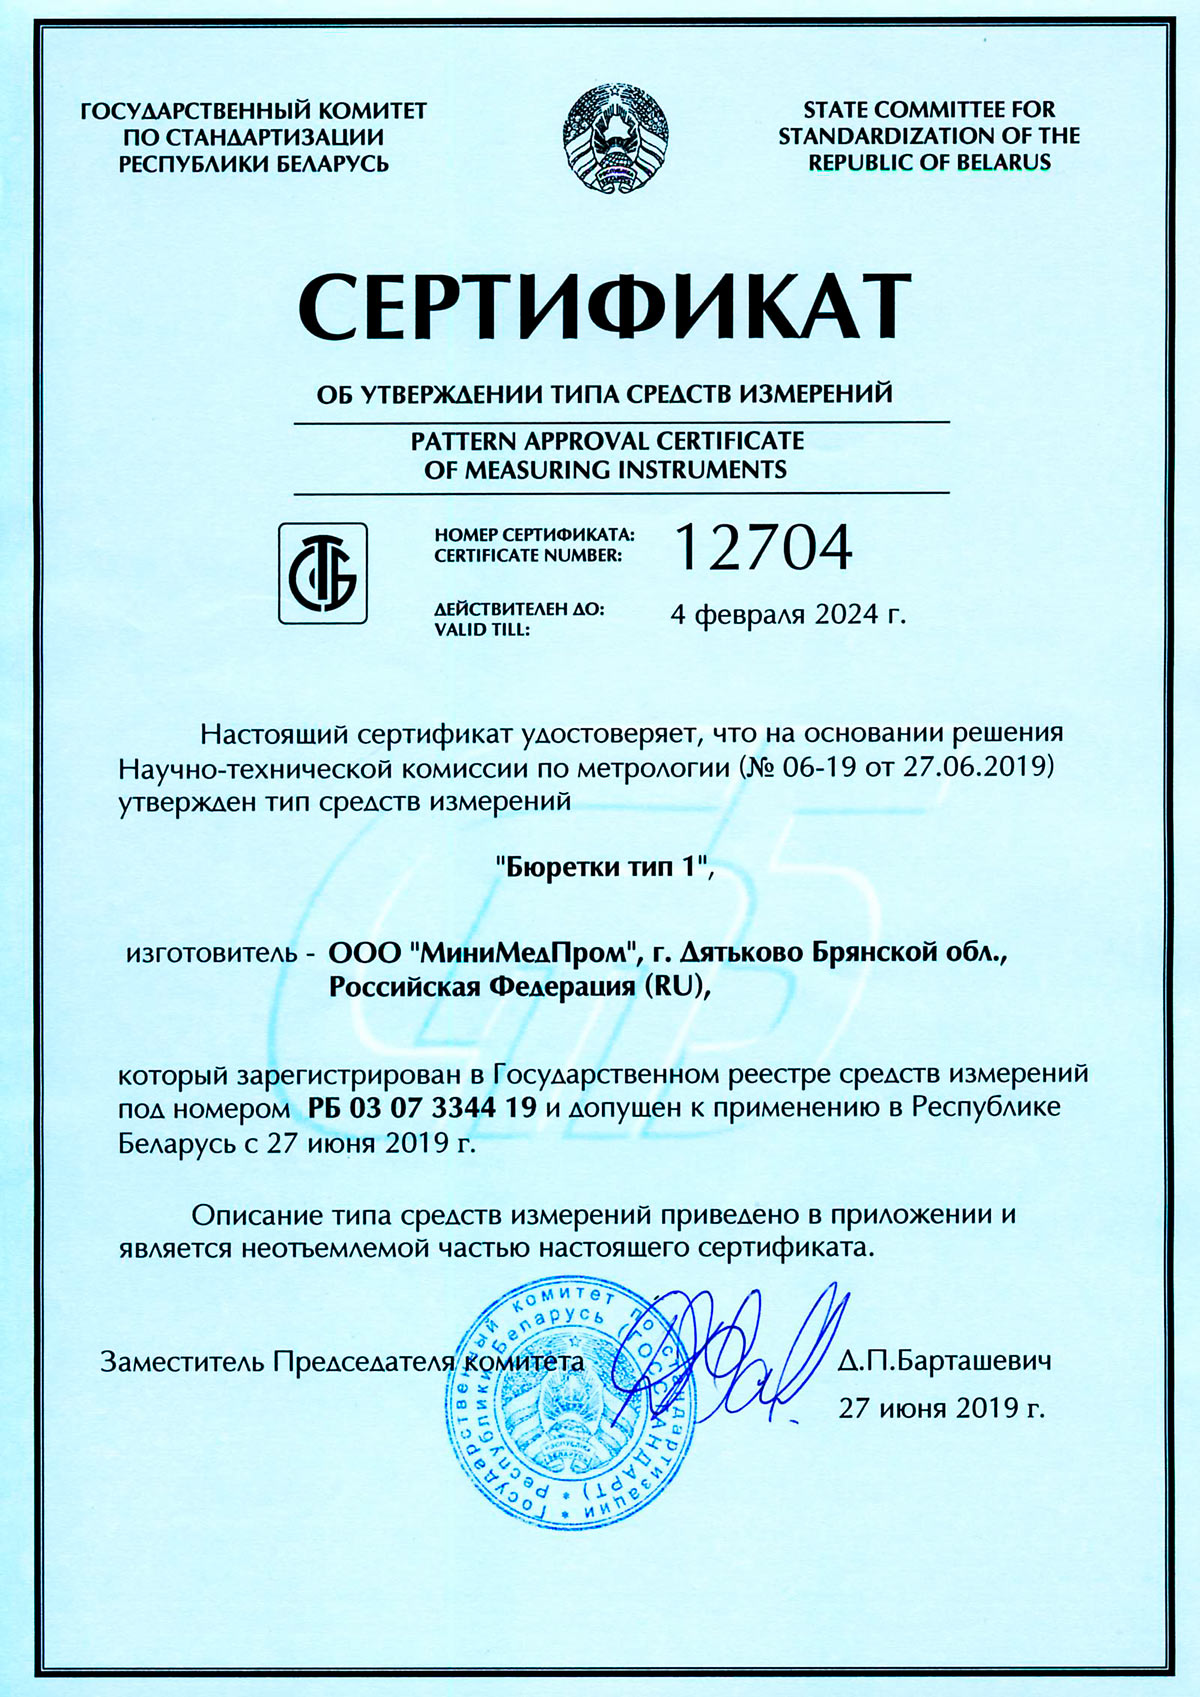 Сертификат от утверждении ТСИ. Бюретки тип 1. Беларусь до 04.02.2024